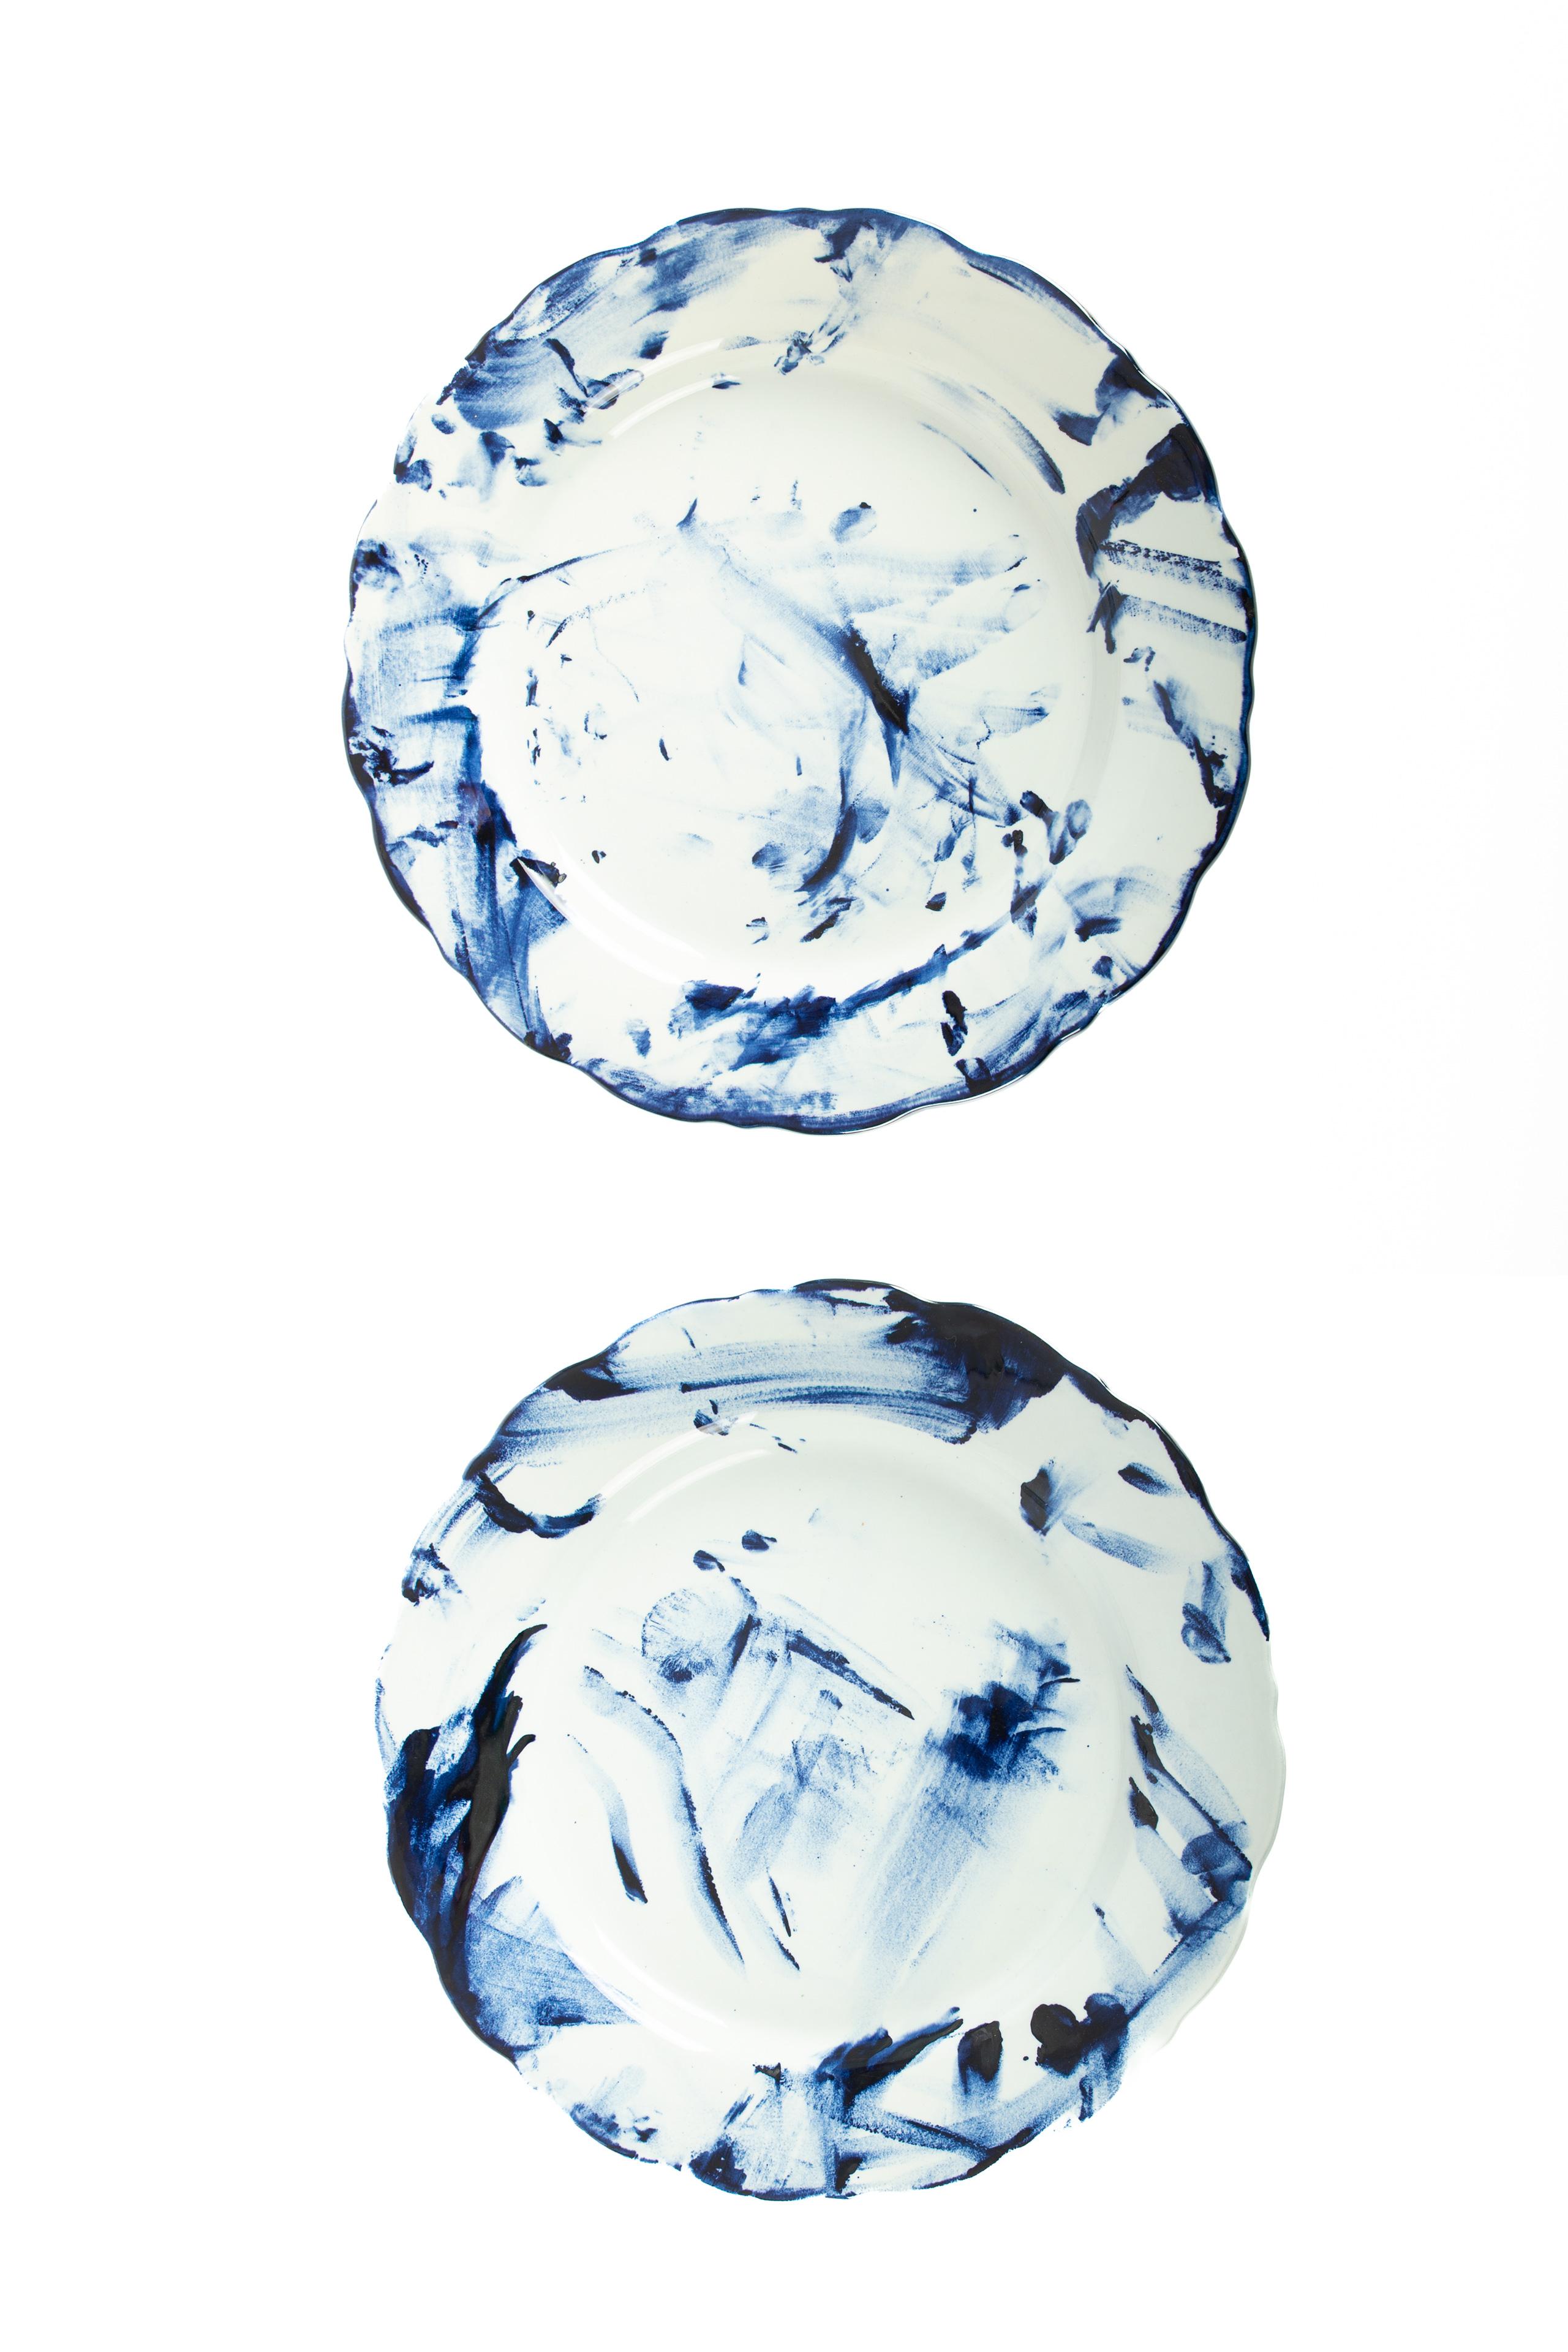 One Minute Delft Blue Plate est disponible en tant qu'édition personnelle exclusive, le Label de Marcel Wanders proposant des œuvres de nature plus personnelle et expérimentale. Les pièces de la série Delft Blue sont uniques et illimitées grâce à la